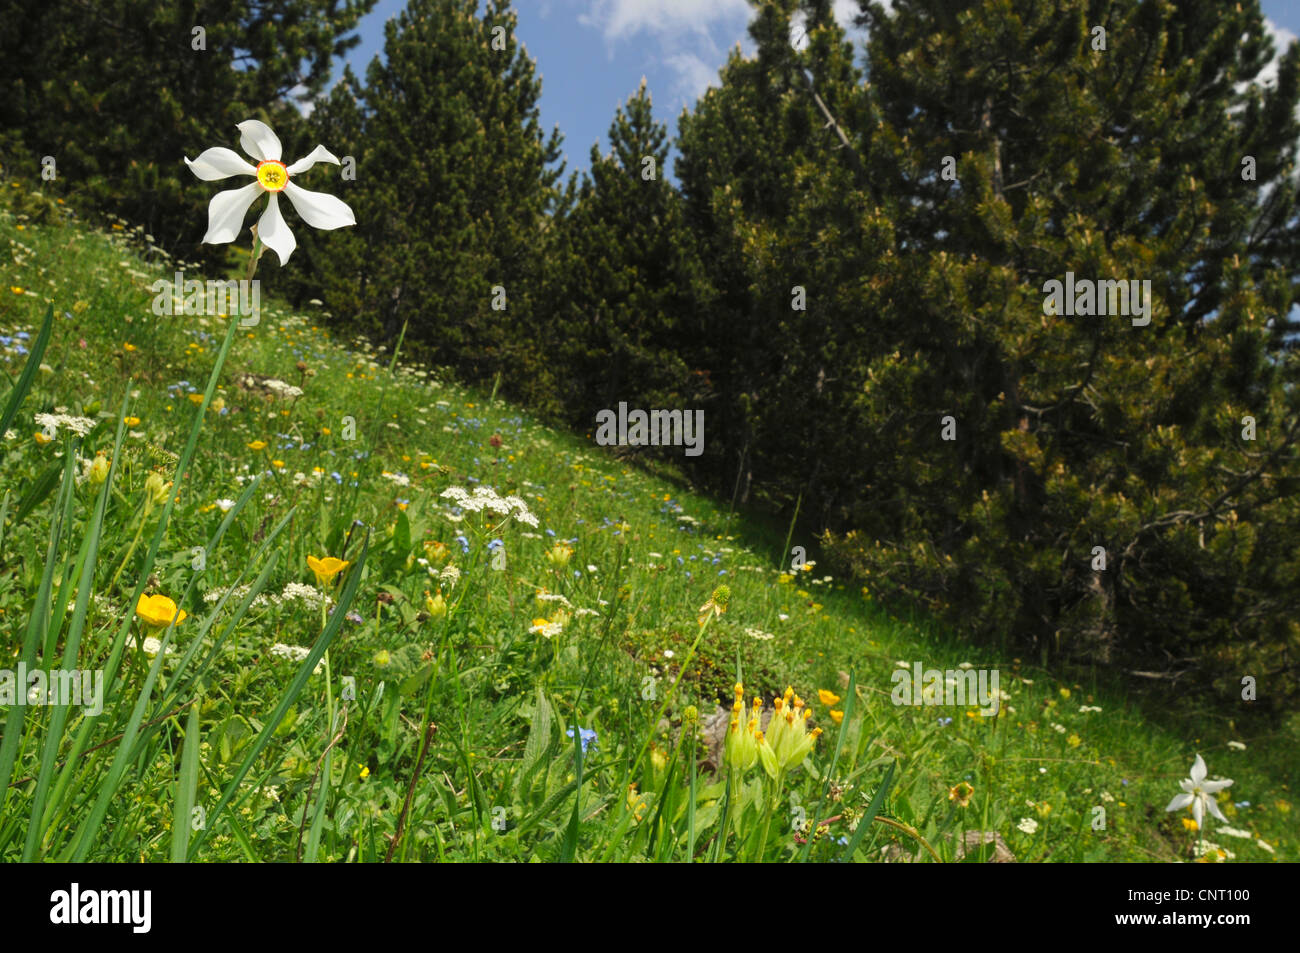 Il fagiano-eye daffodil, fagiano's-eye narciso, poeta narciso (Narcissus poeticus), fioritura su un prato in primavera, Spagna, Katalonia, Pirenei, Val dAran Foto Stock